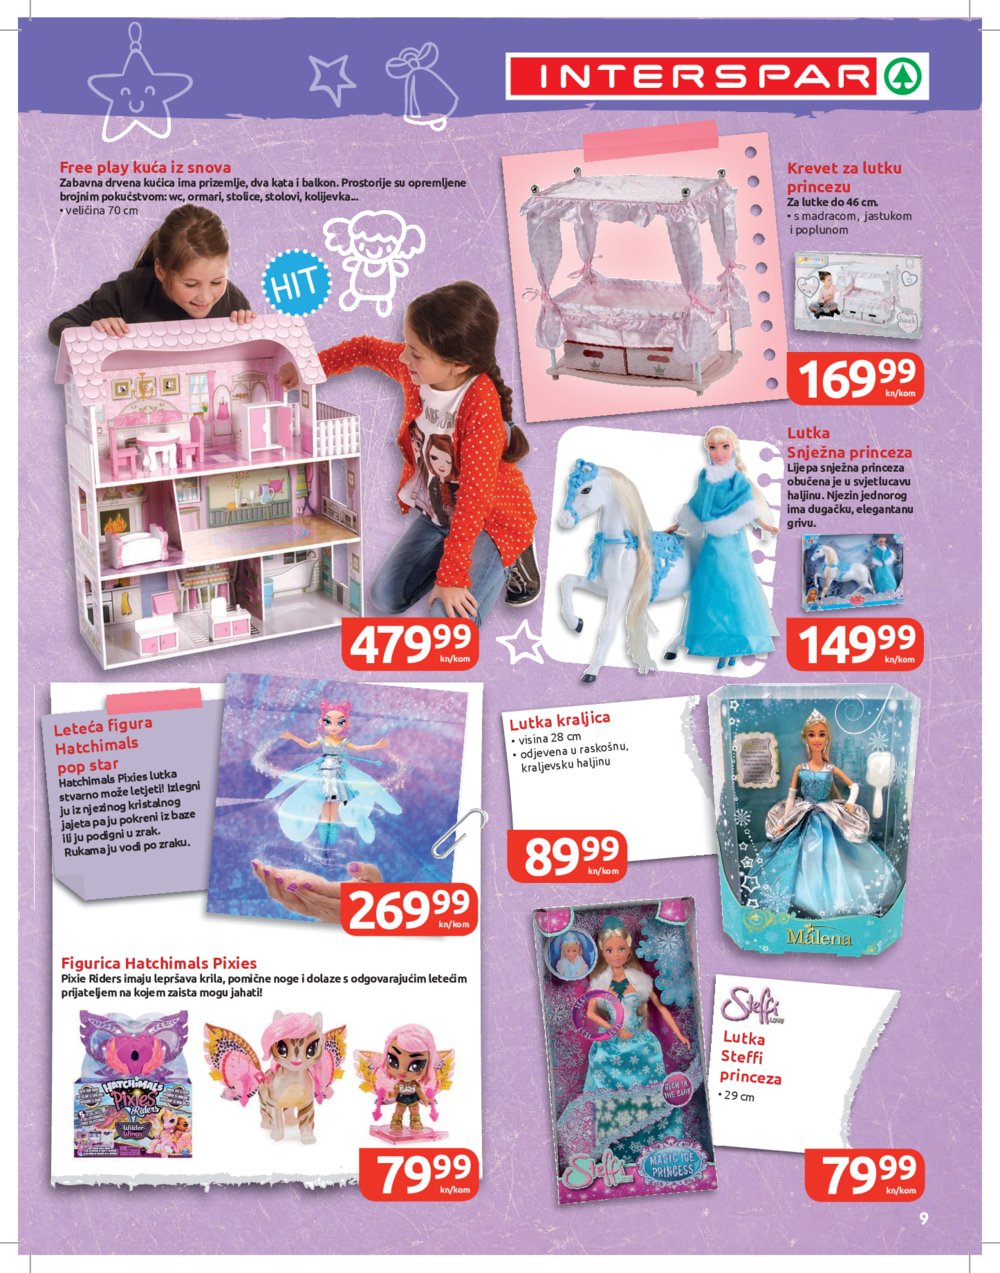 INTERSPAR Katalog Svijet igračaka 27.10.-05.01.2022.